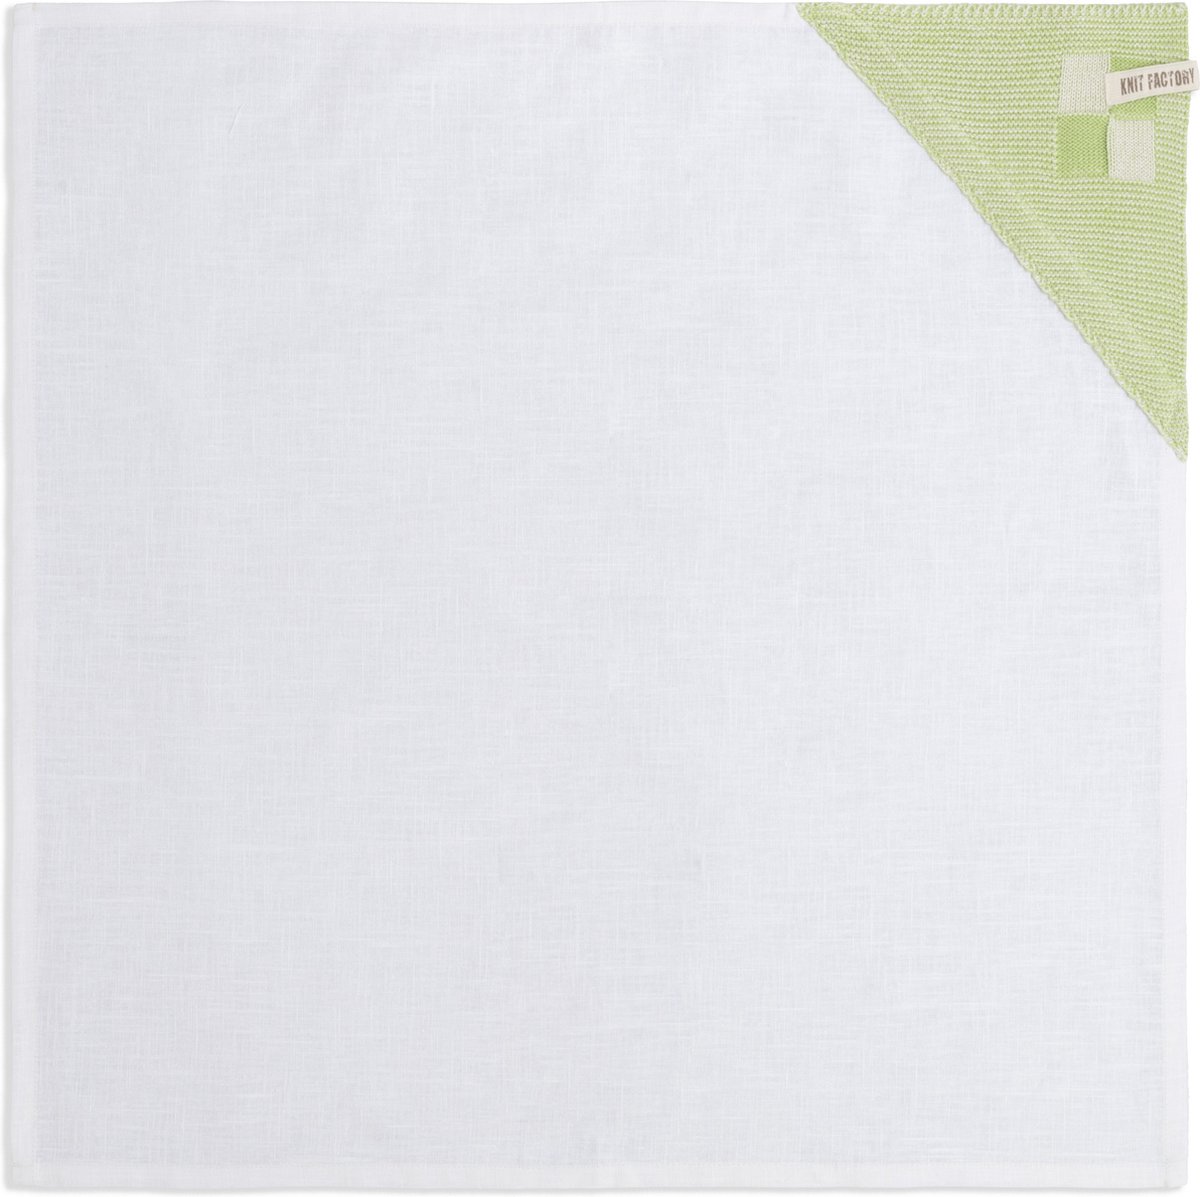 Knit Factory Linnen Theedoek - Poleerdoek - Schoteldoek - Afdroogdoek - Vaatdoek - Thee doek - Keuken Droogdoek Block - Ecru/Spring Green - 65x65 cm